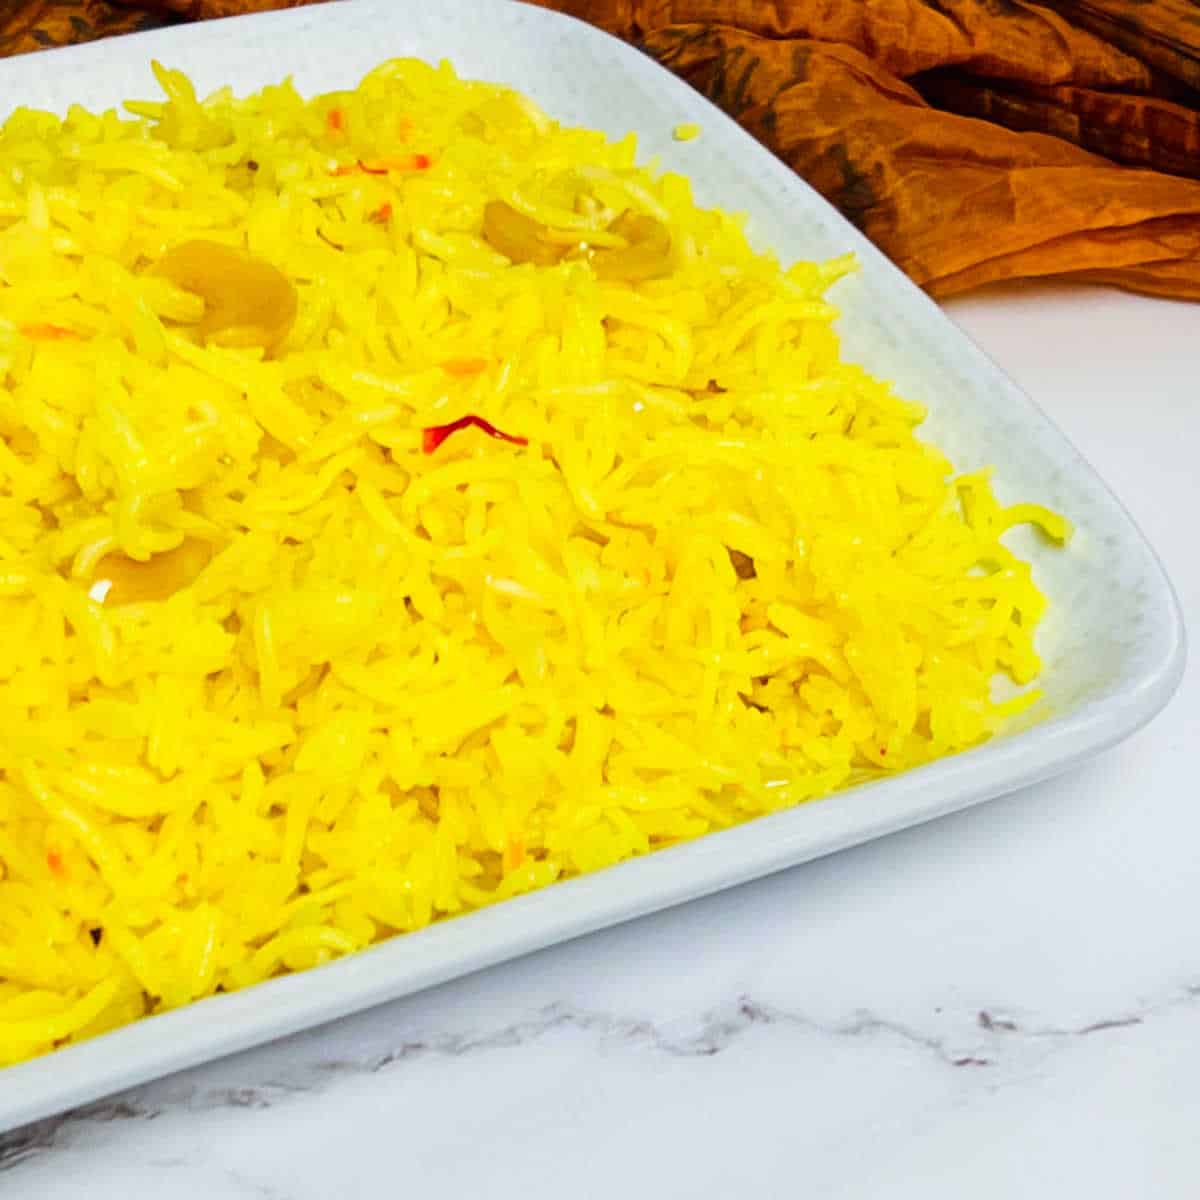 Instant Pot Saffron Rice